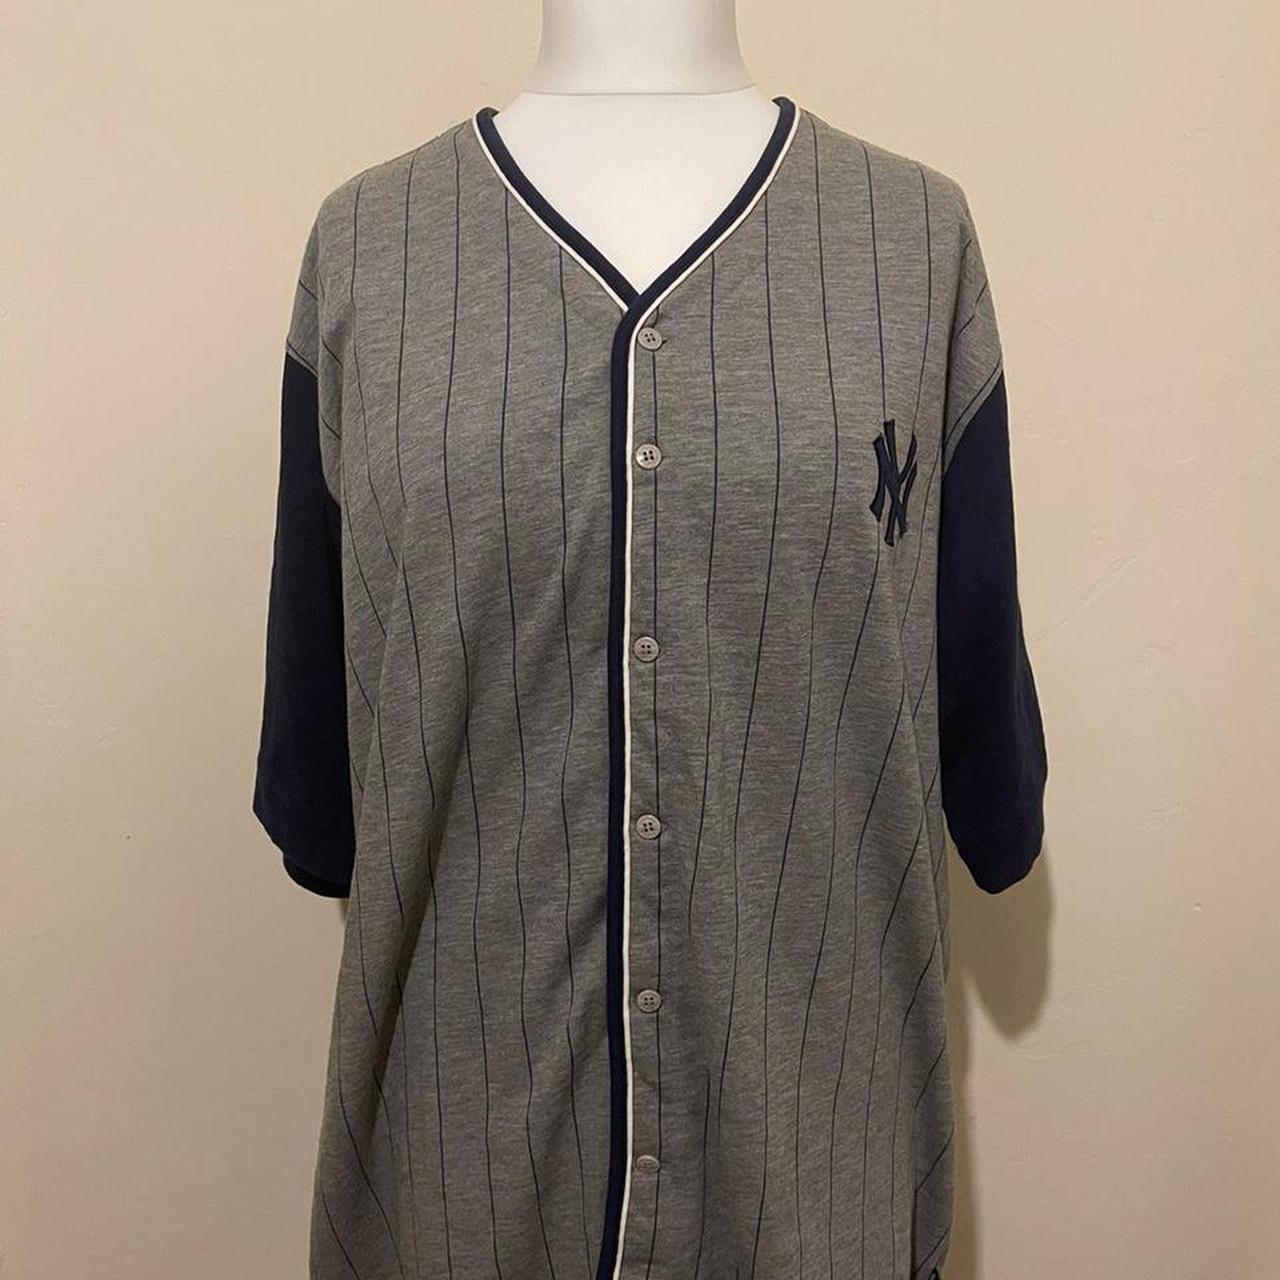 DISCOUNTED Adidas New York Yankees jersey baseball ⚾️